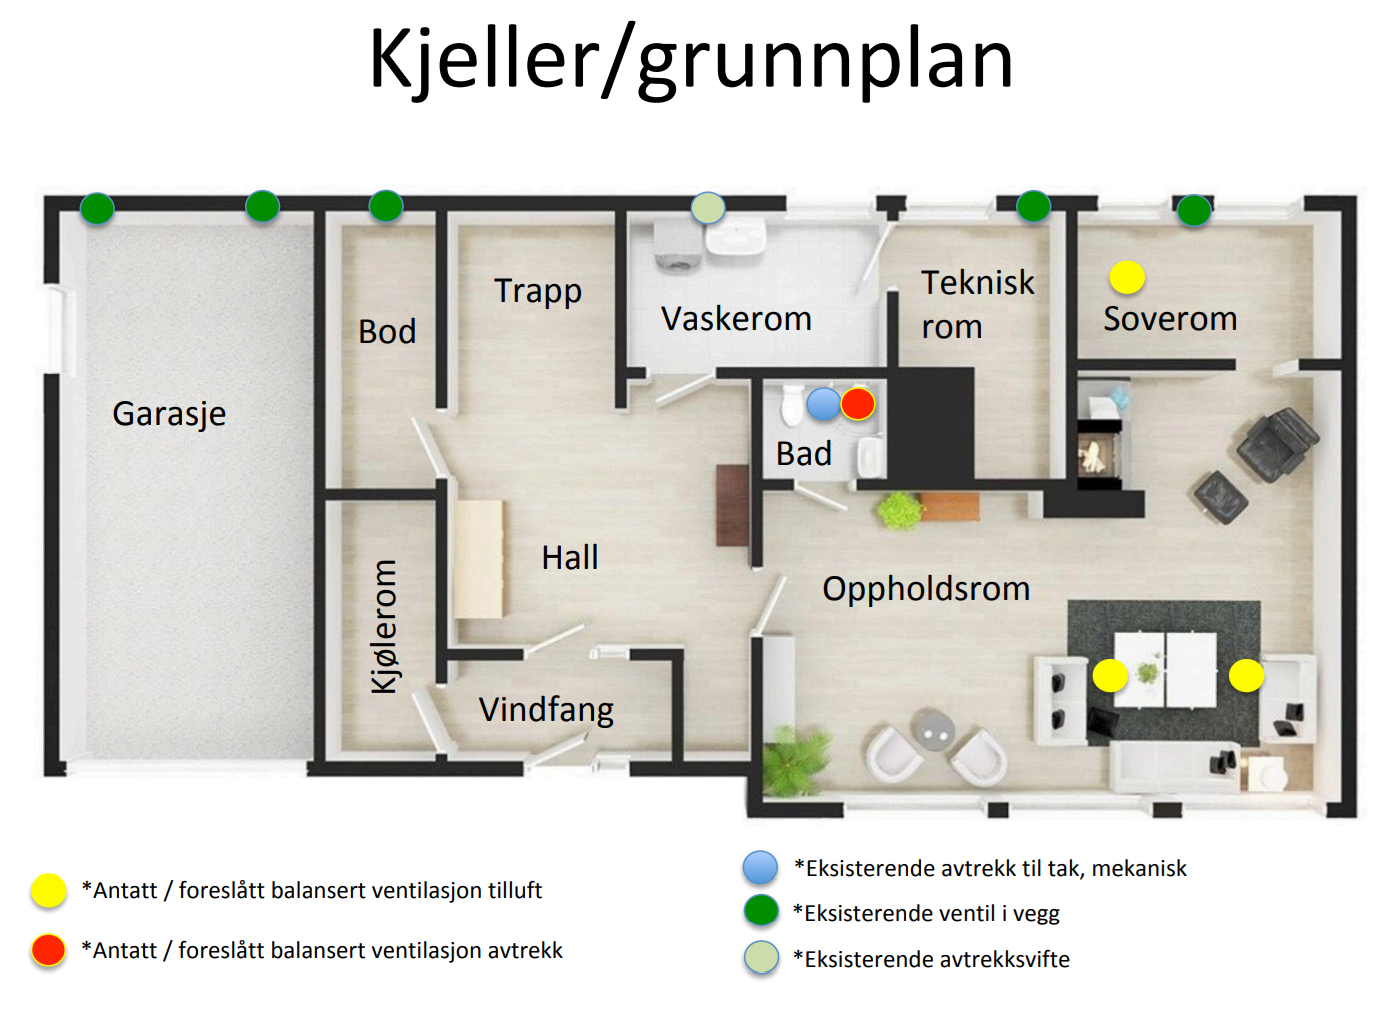 Balansert ventilasjon i bolig - Flexit vs. Villavent - grunnplan.png - Lars N